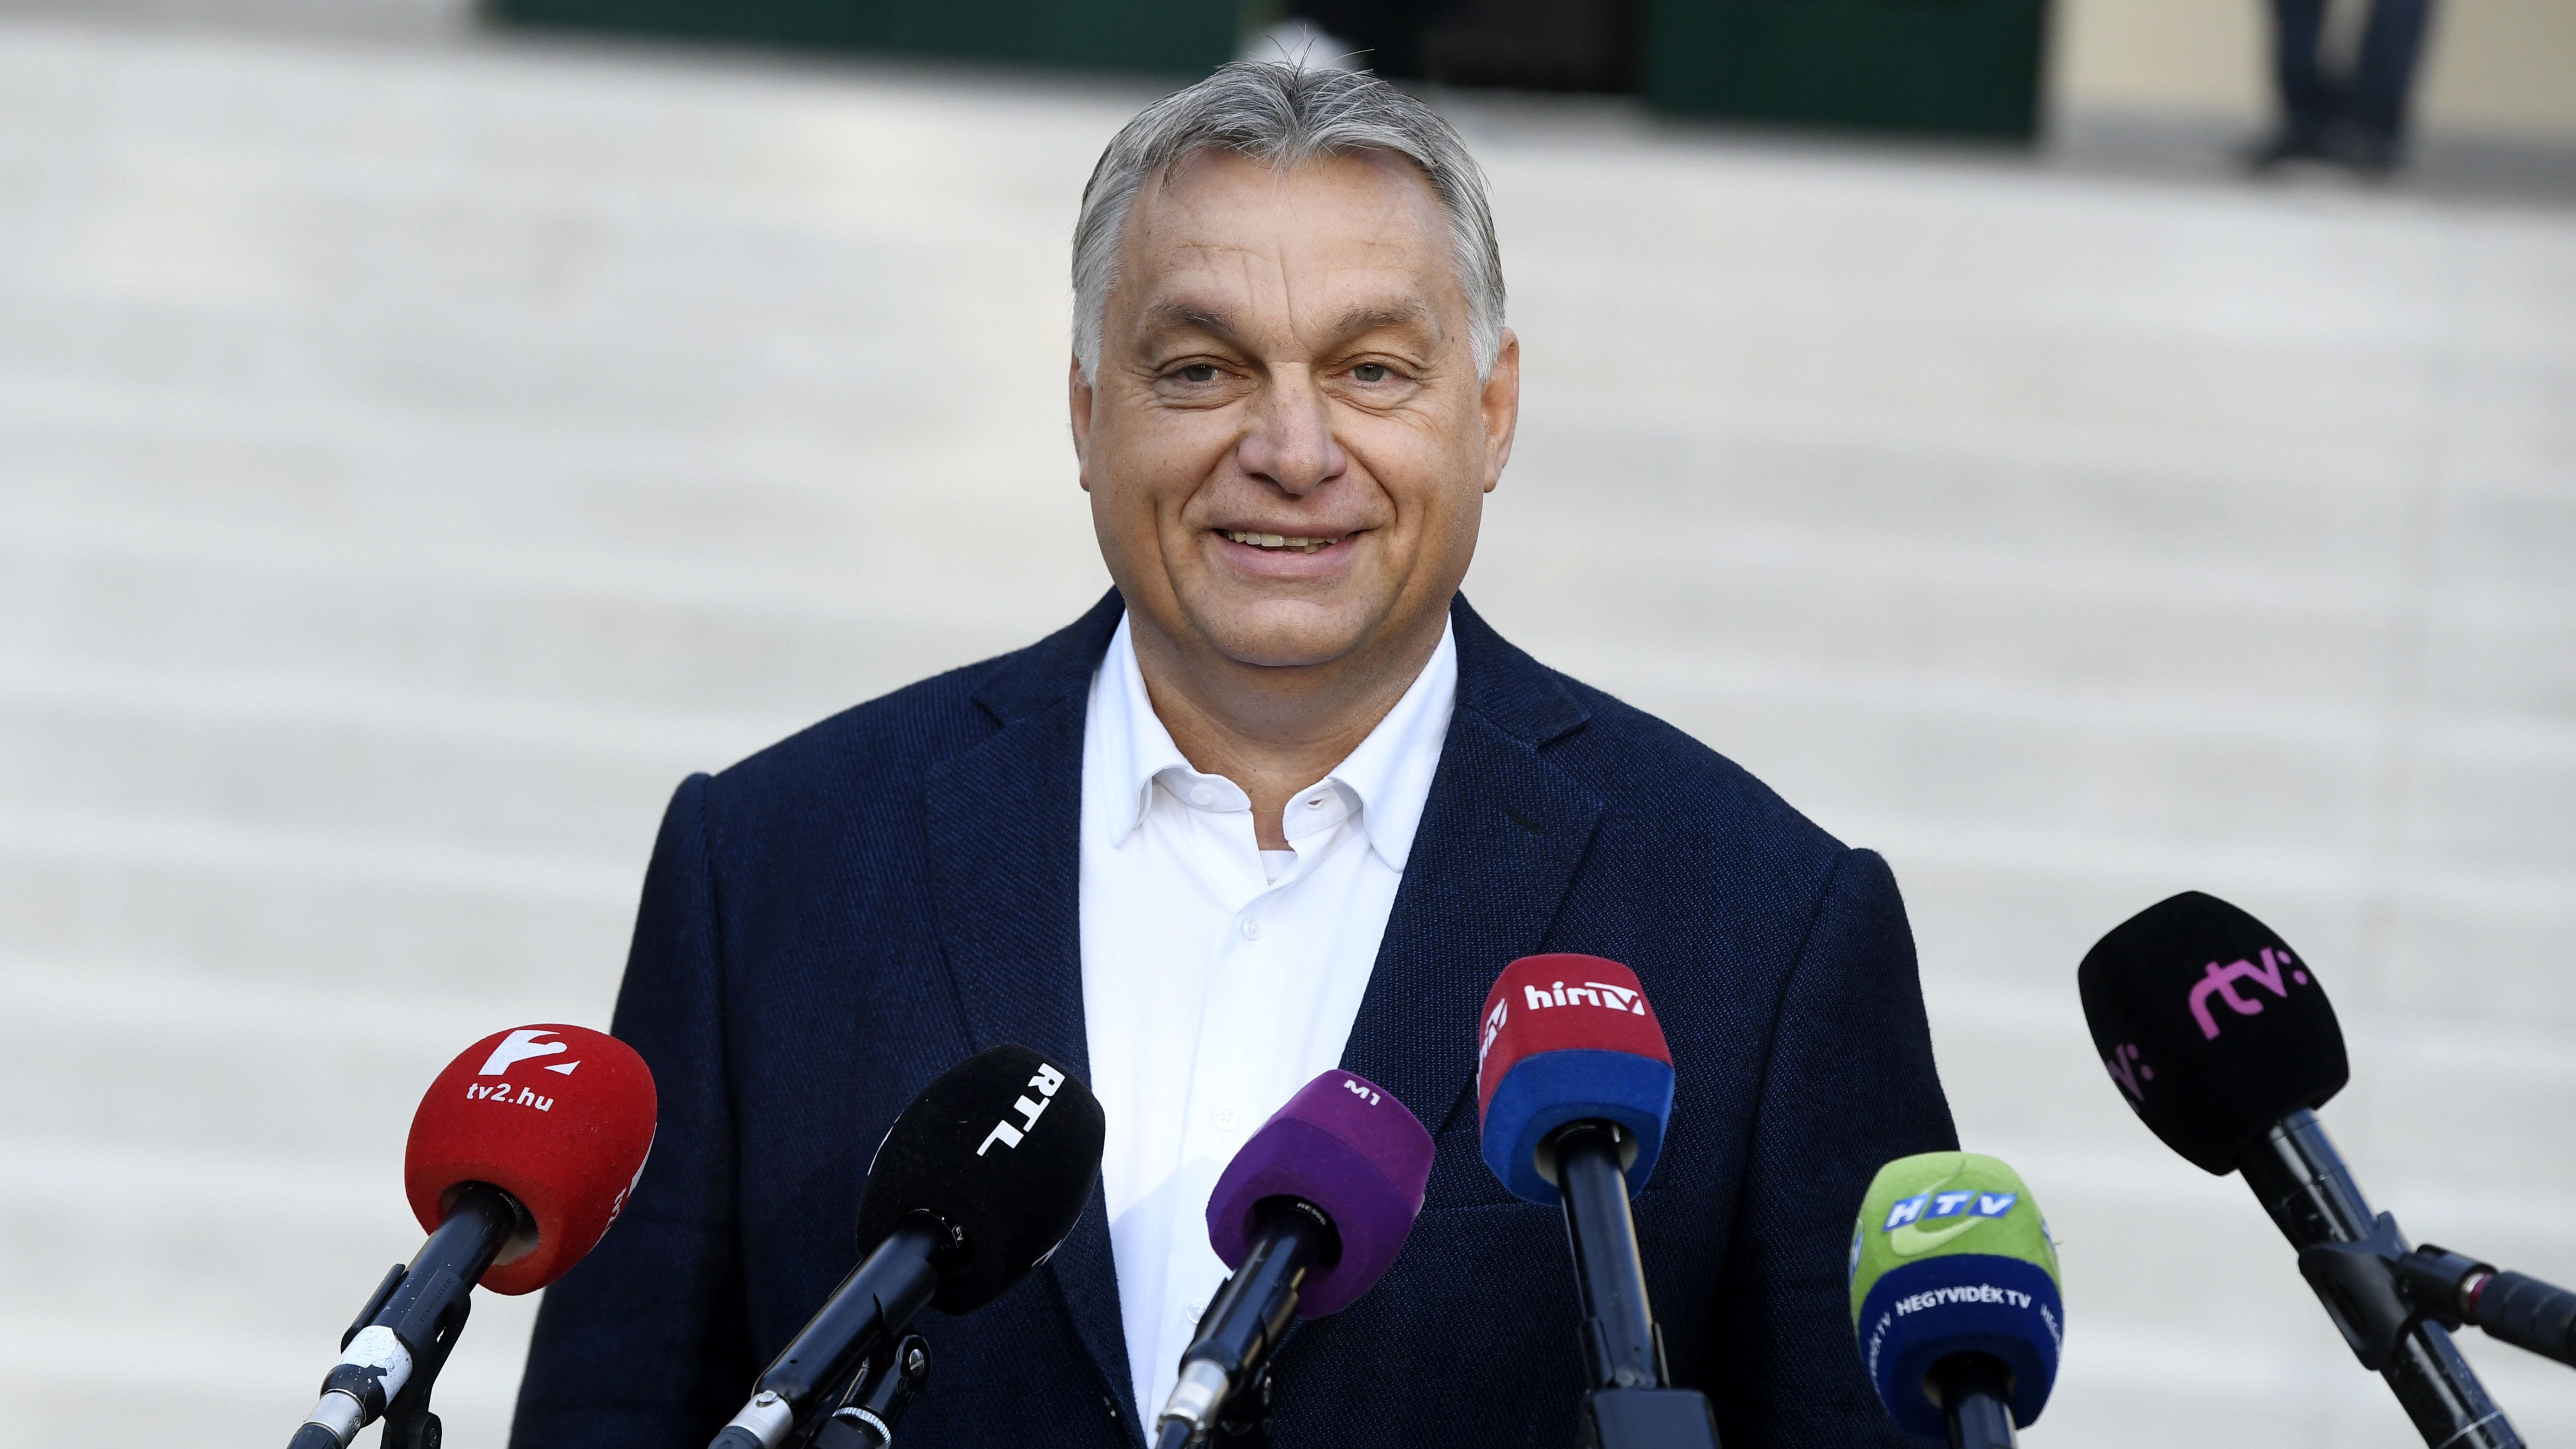 Ettől függ, mond-e beszédet Orbán október 23-án